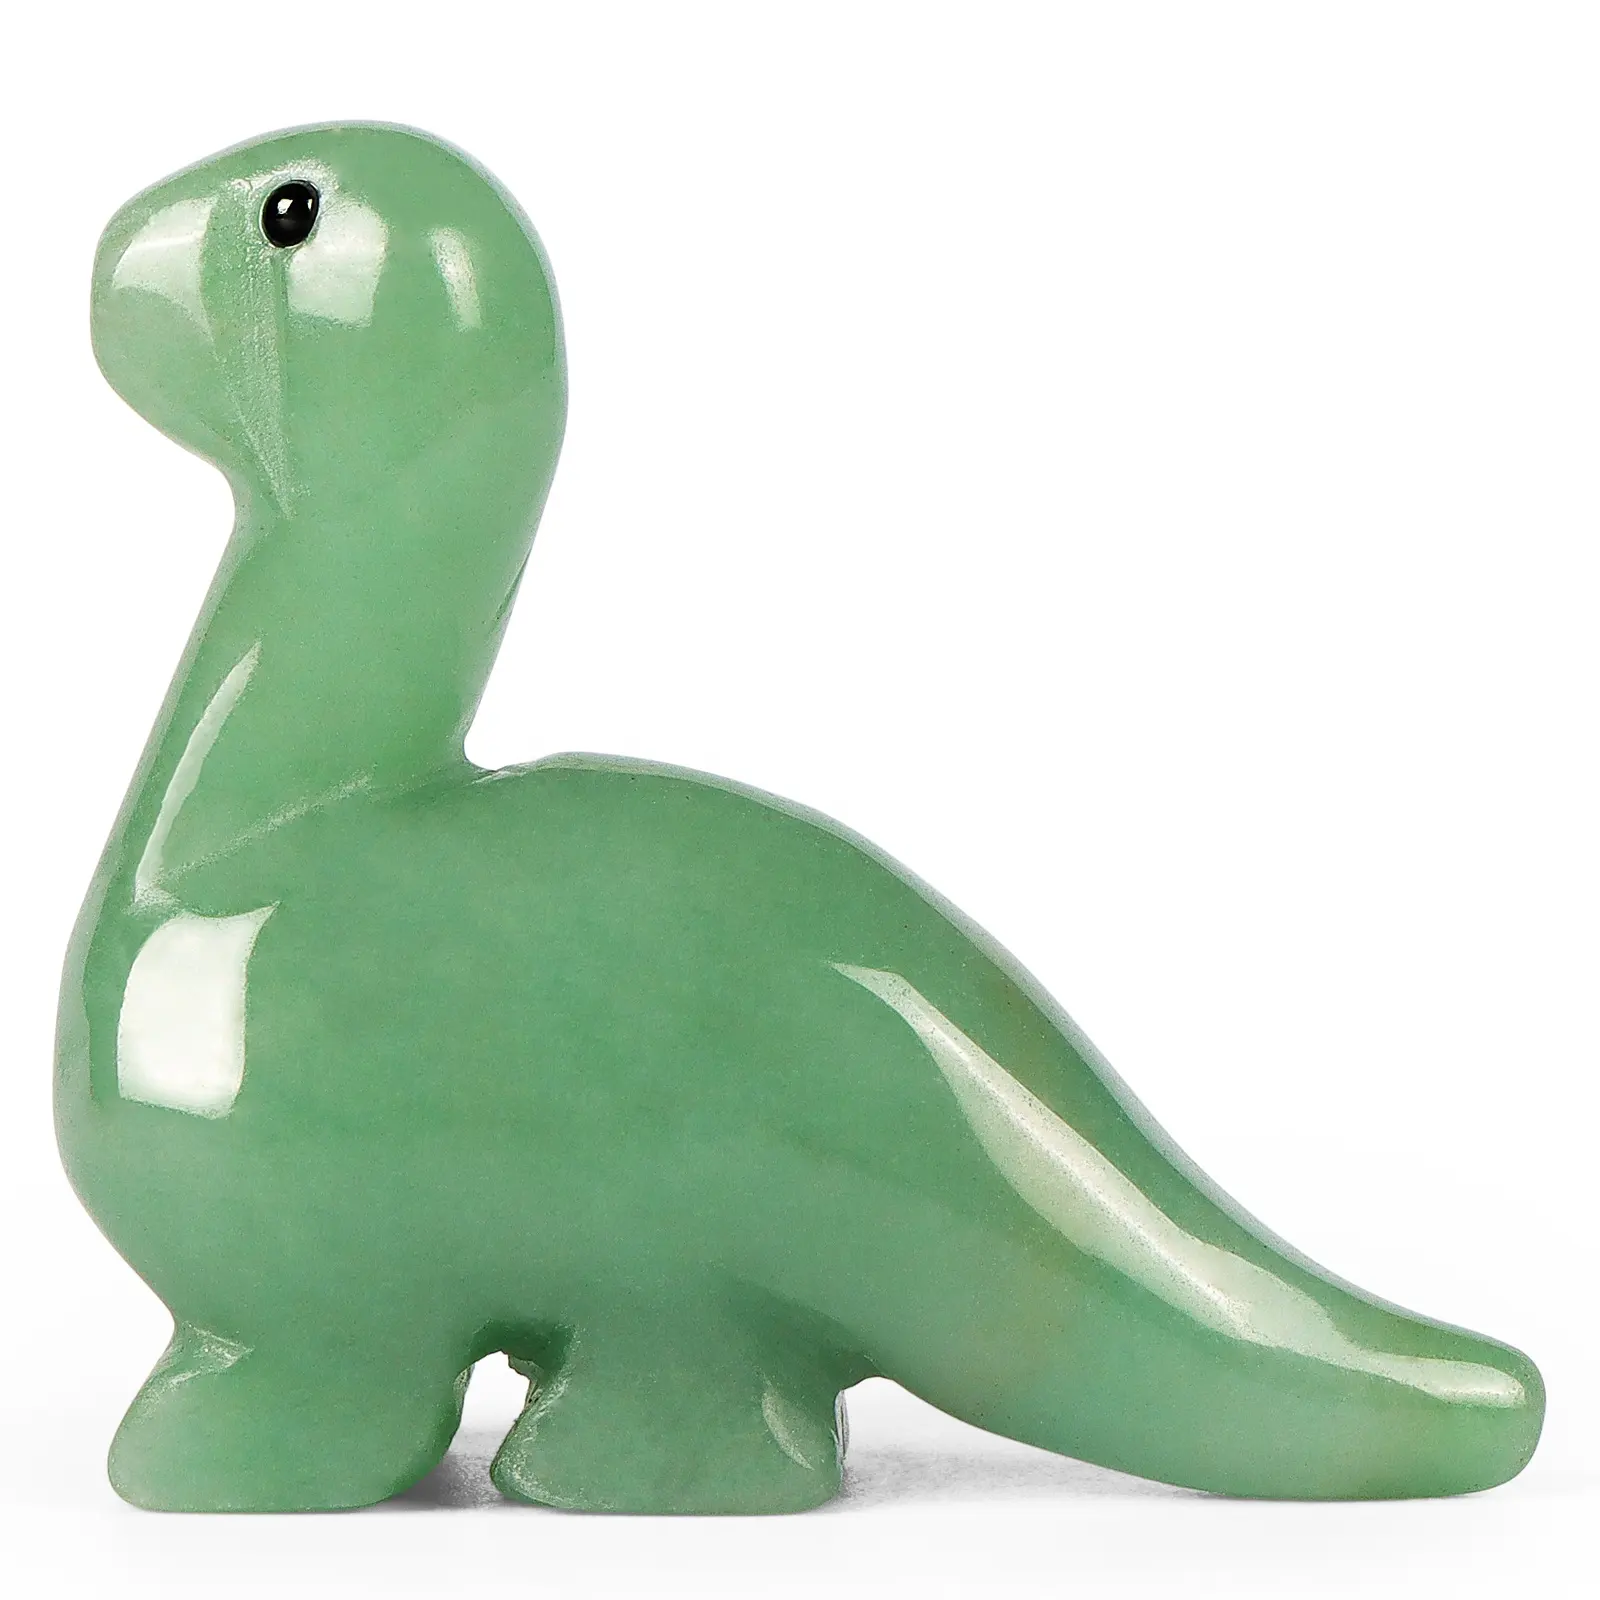 Kristall grüne Aventurin-Dinosaurier-Figur Hand geschnitzte realistische niedliche Dinosaurier-Figuren Statue Tier Sammeln Sie Dekoration oder Geschenke